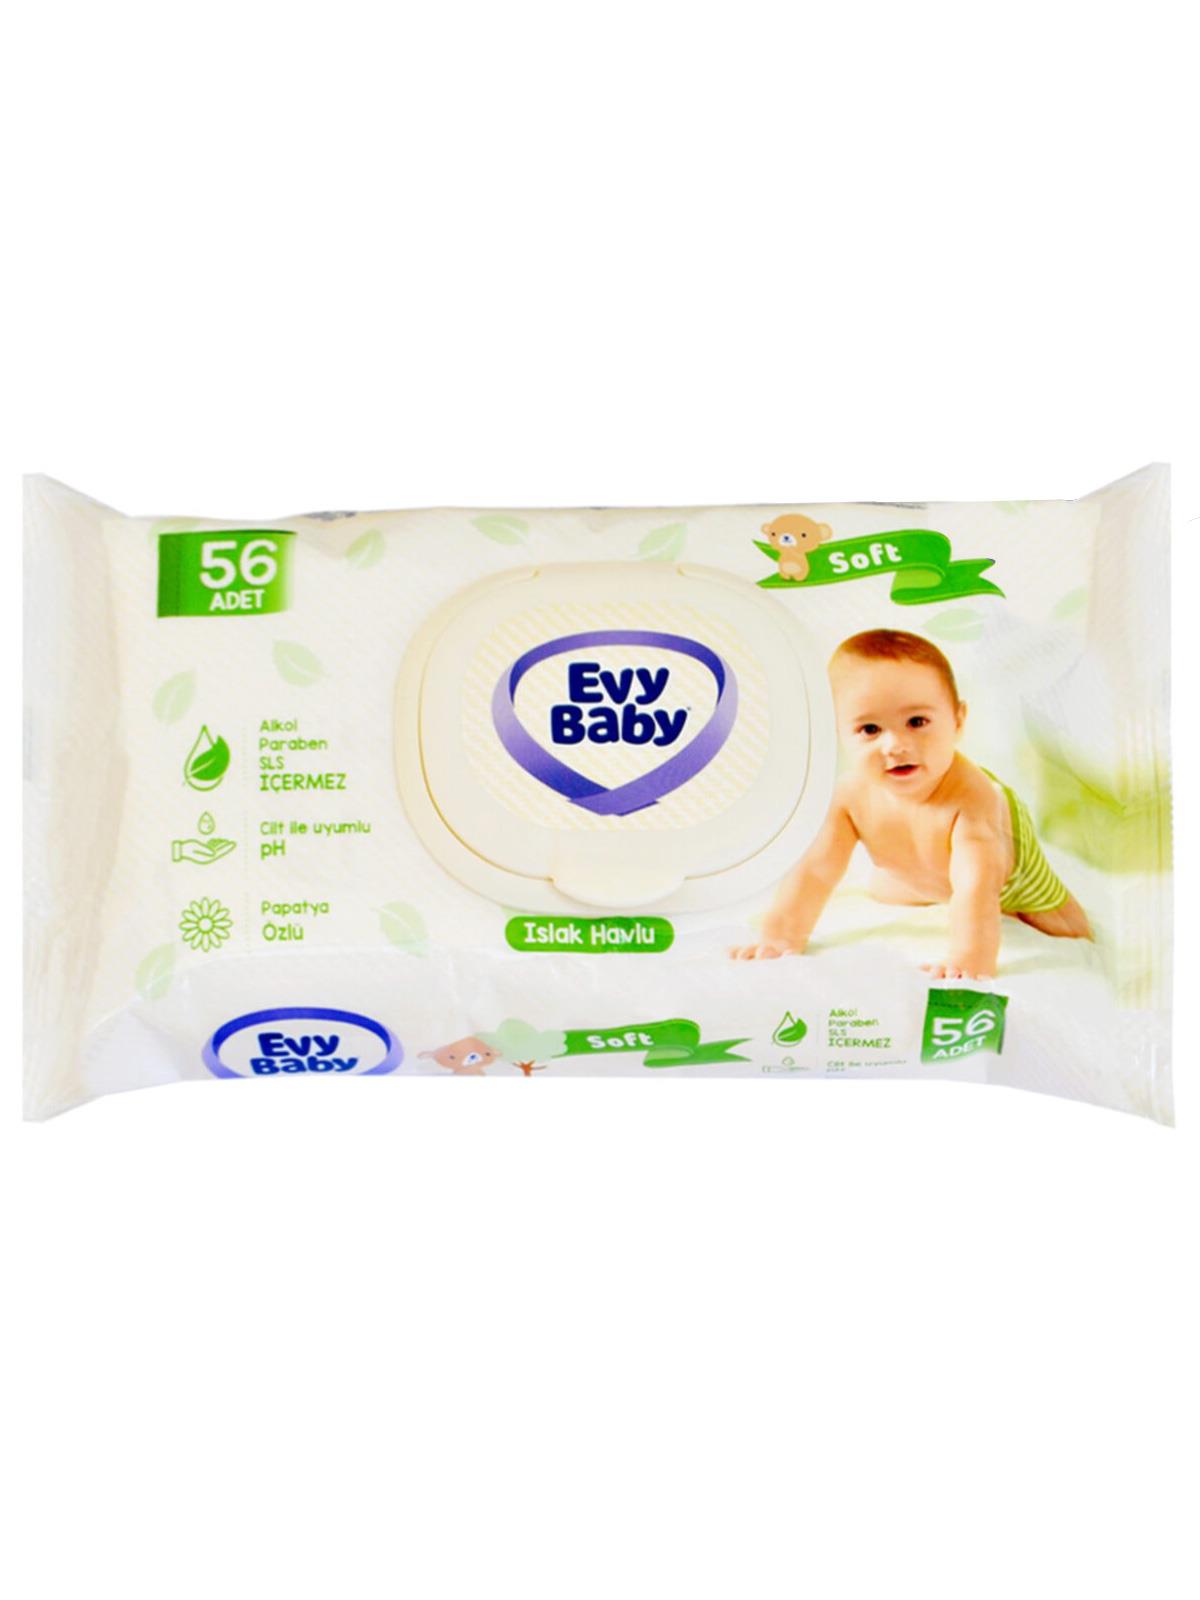 Evy Baby Soft Islak Havlu 56 Yaprak